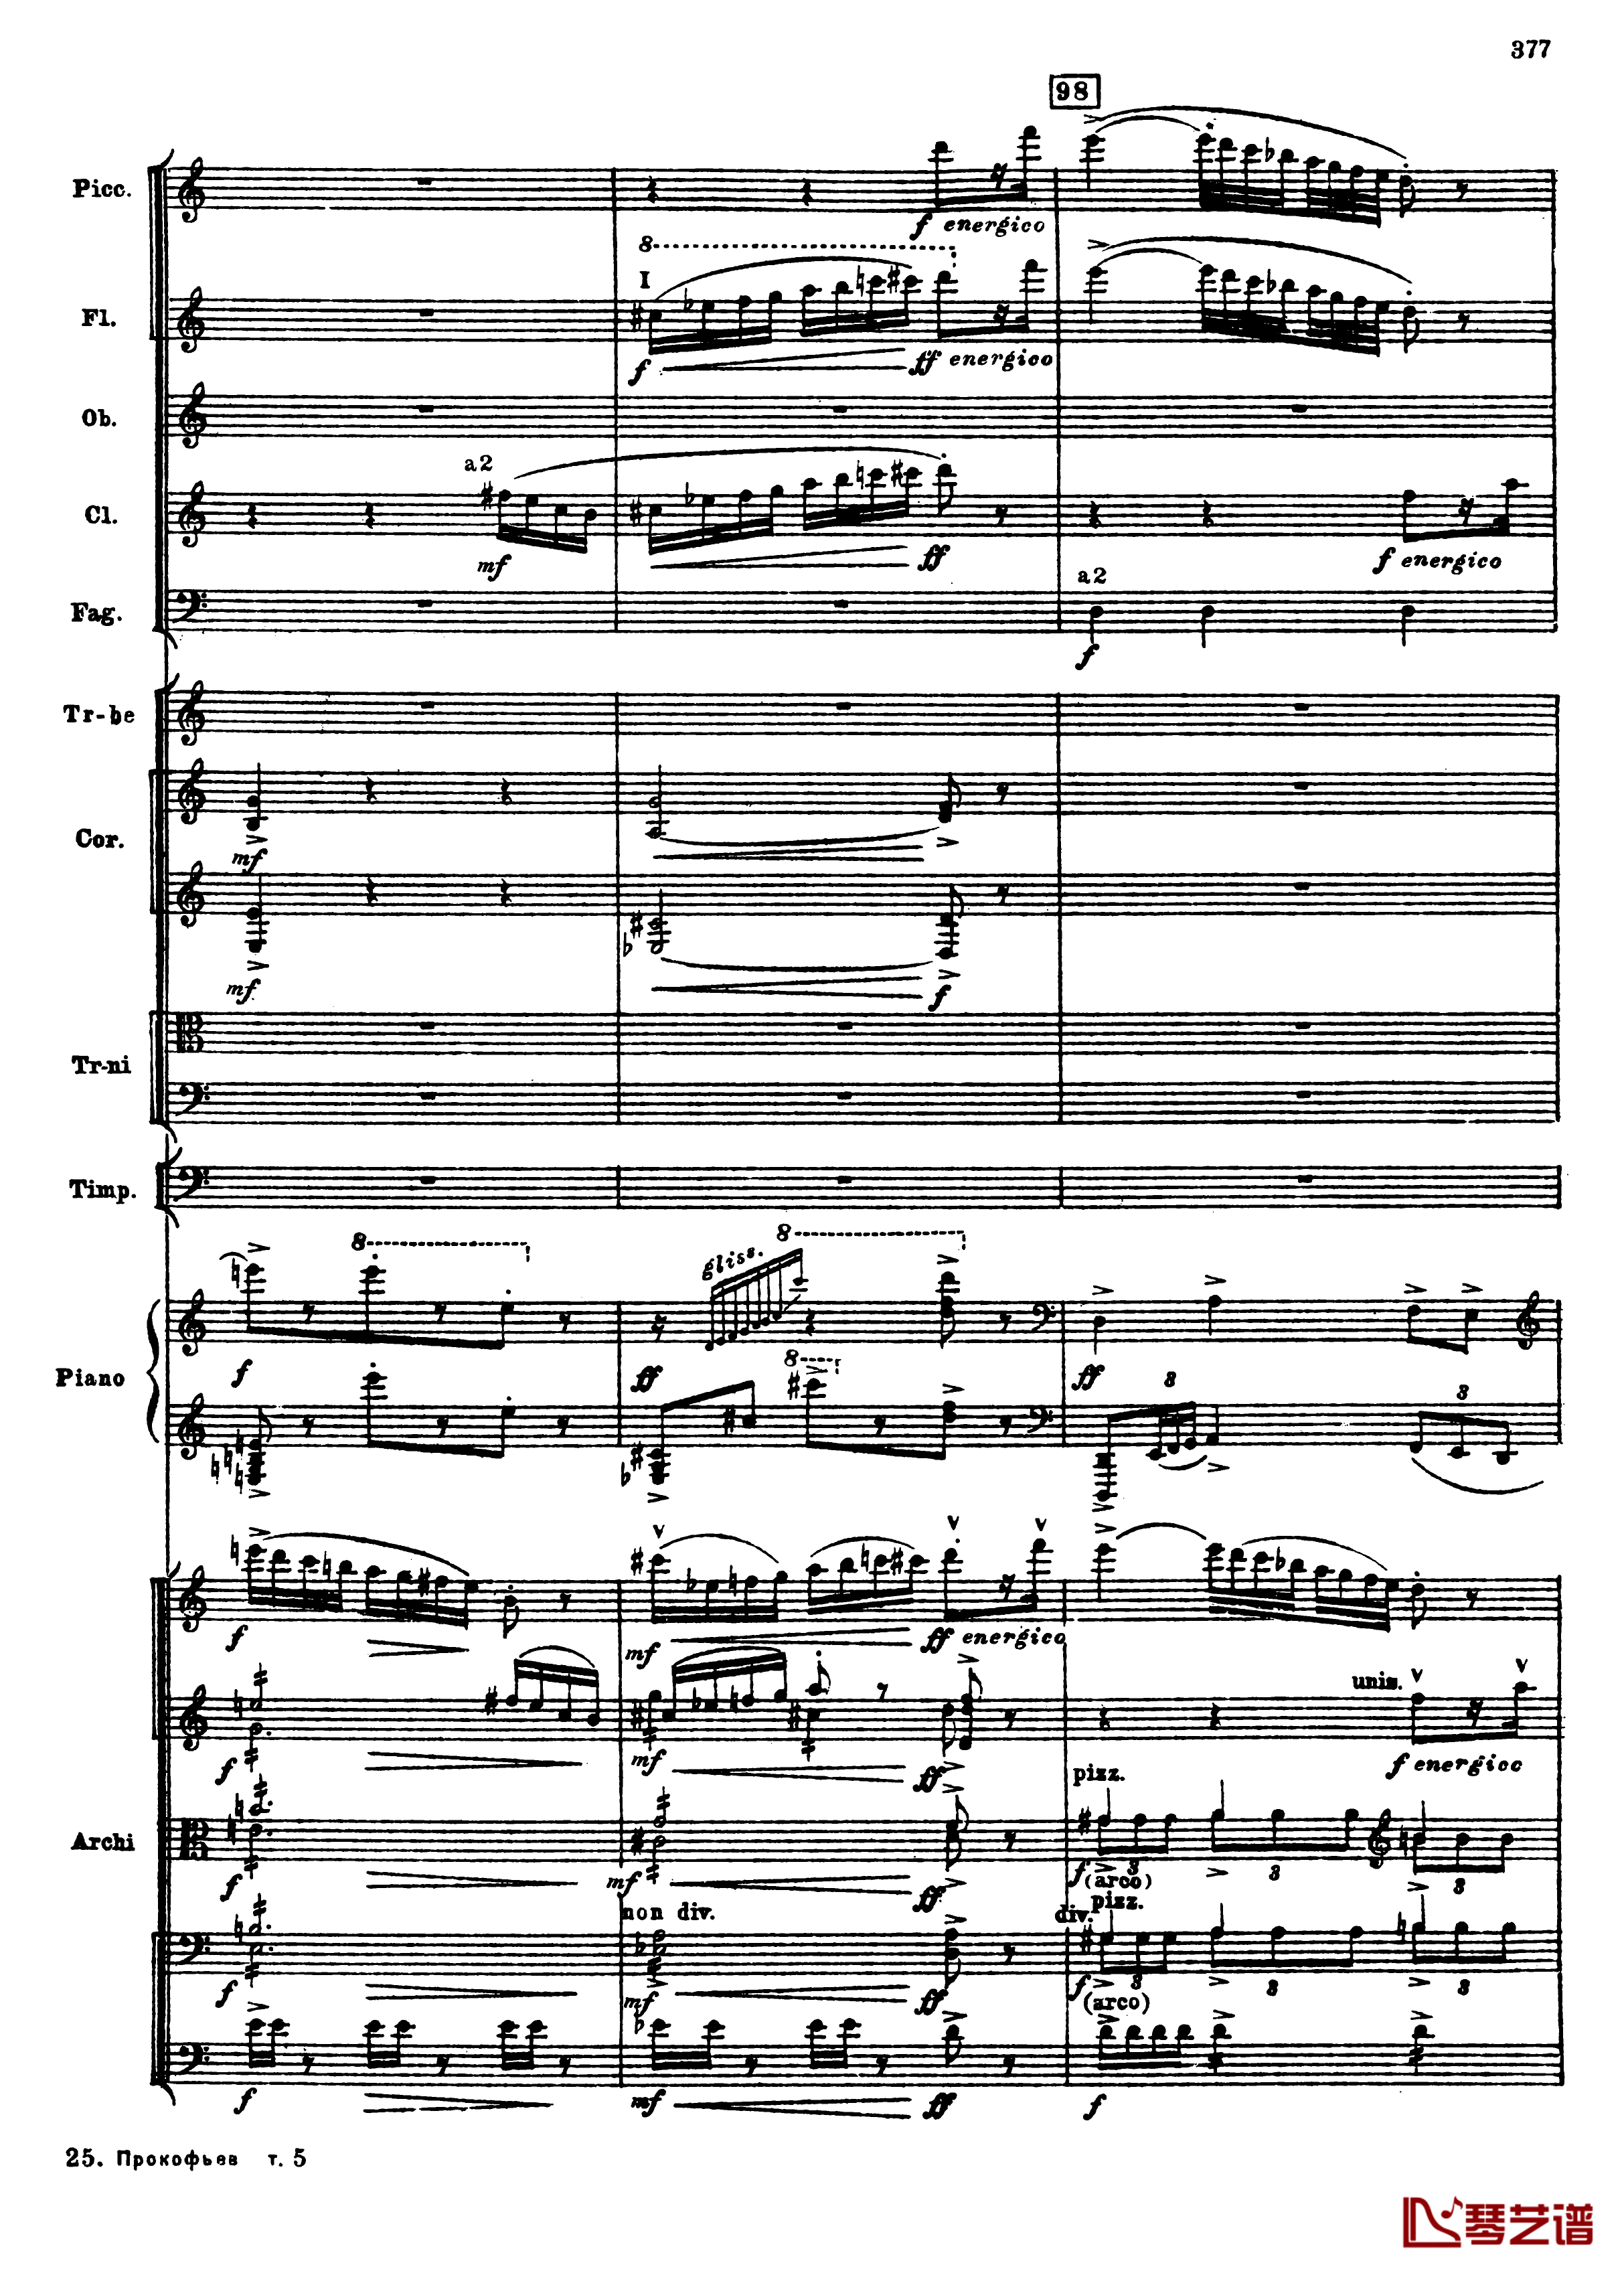 普罗科菲耶夫第三钢琴协奏曲钢琴谱-总谱-普罗科非耶夫109